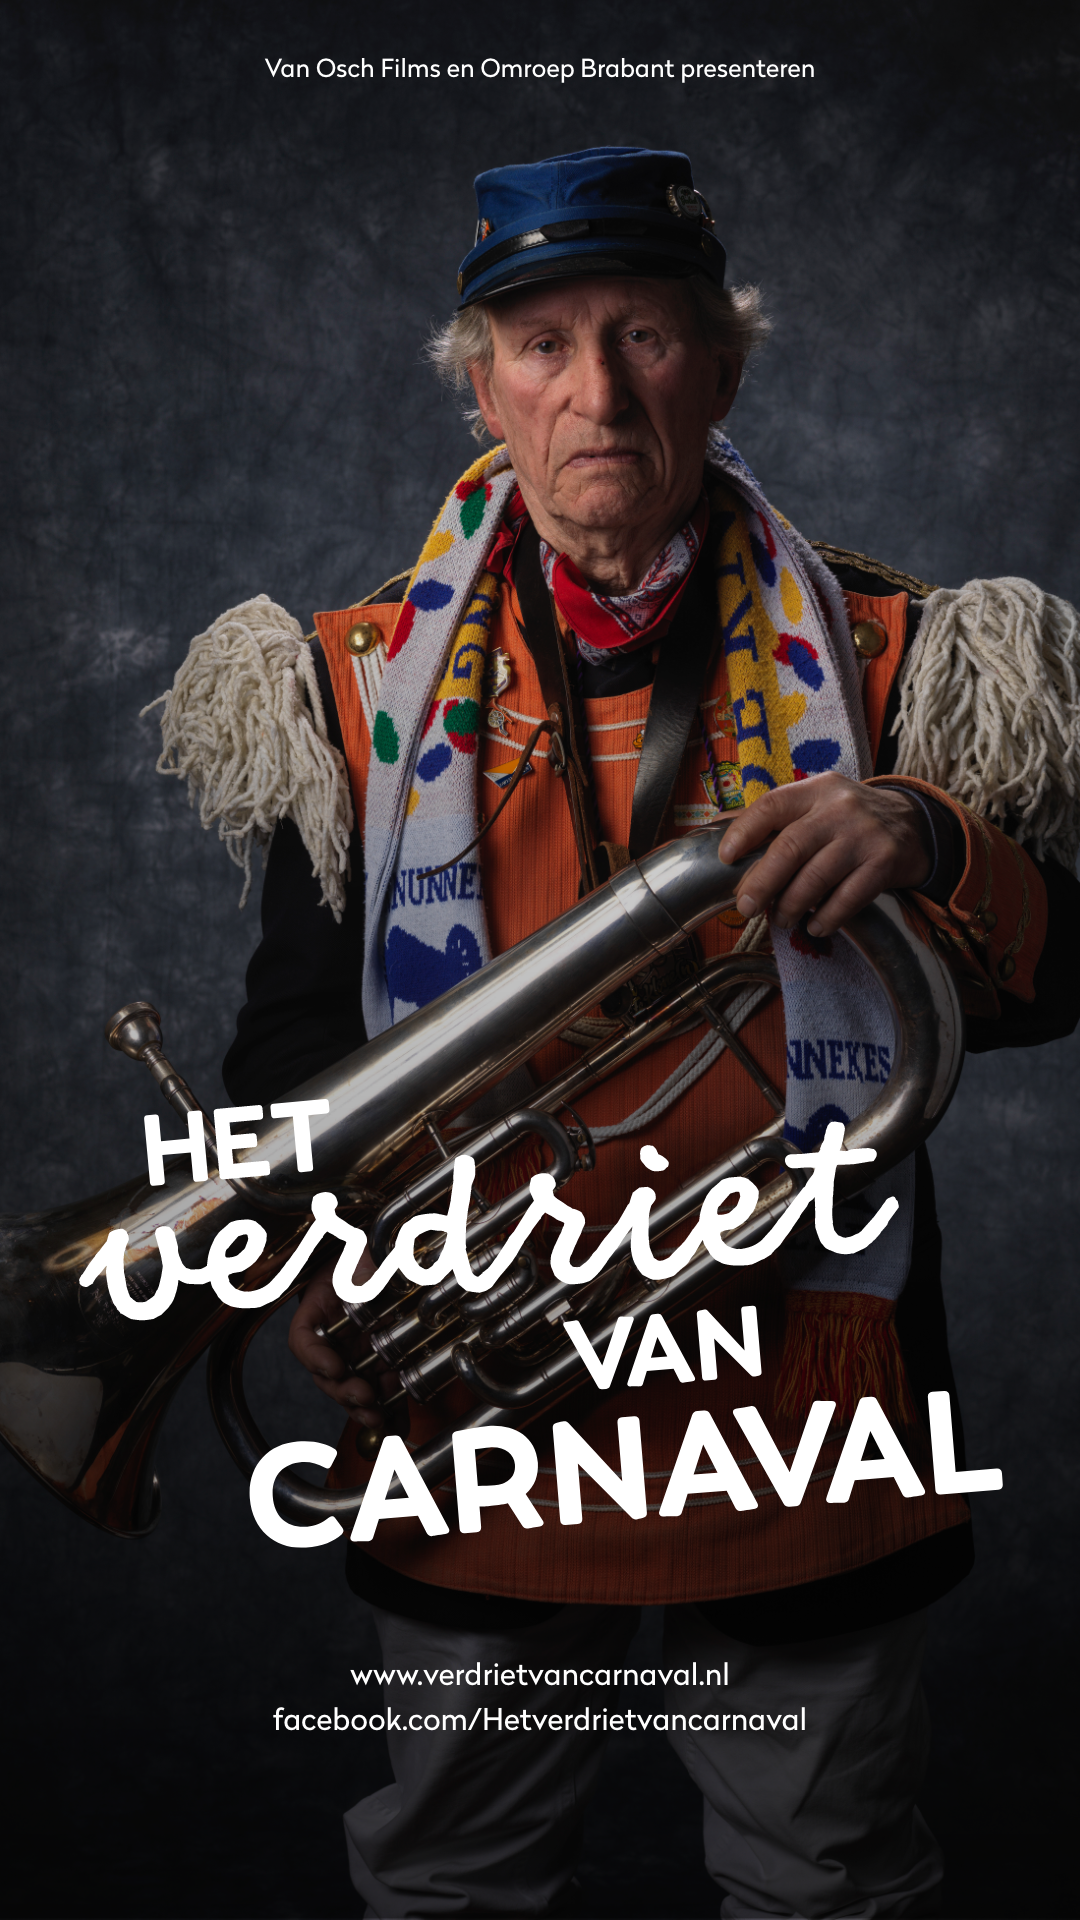 Verdriet-van-Carnaval-1080x1920-2.png#asset:17880